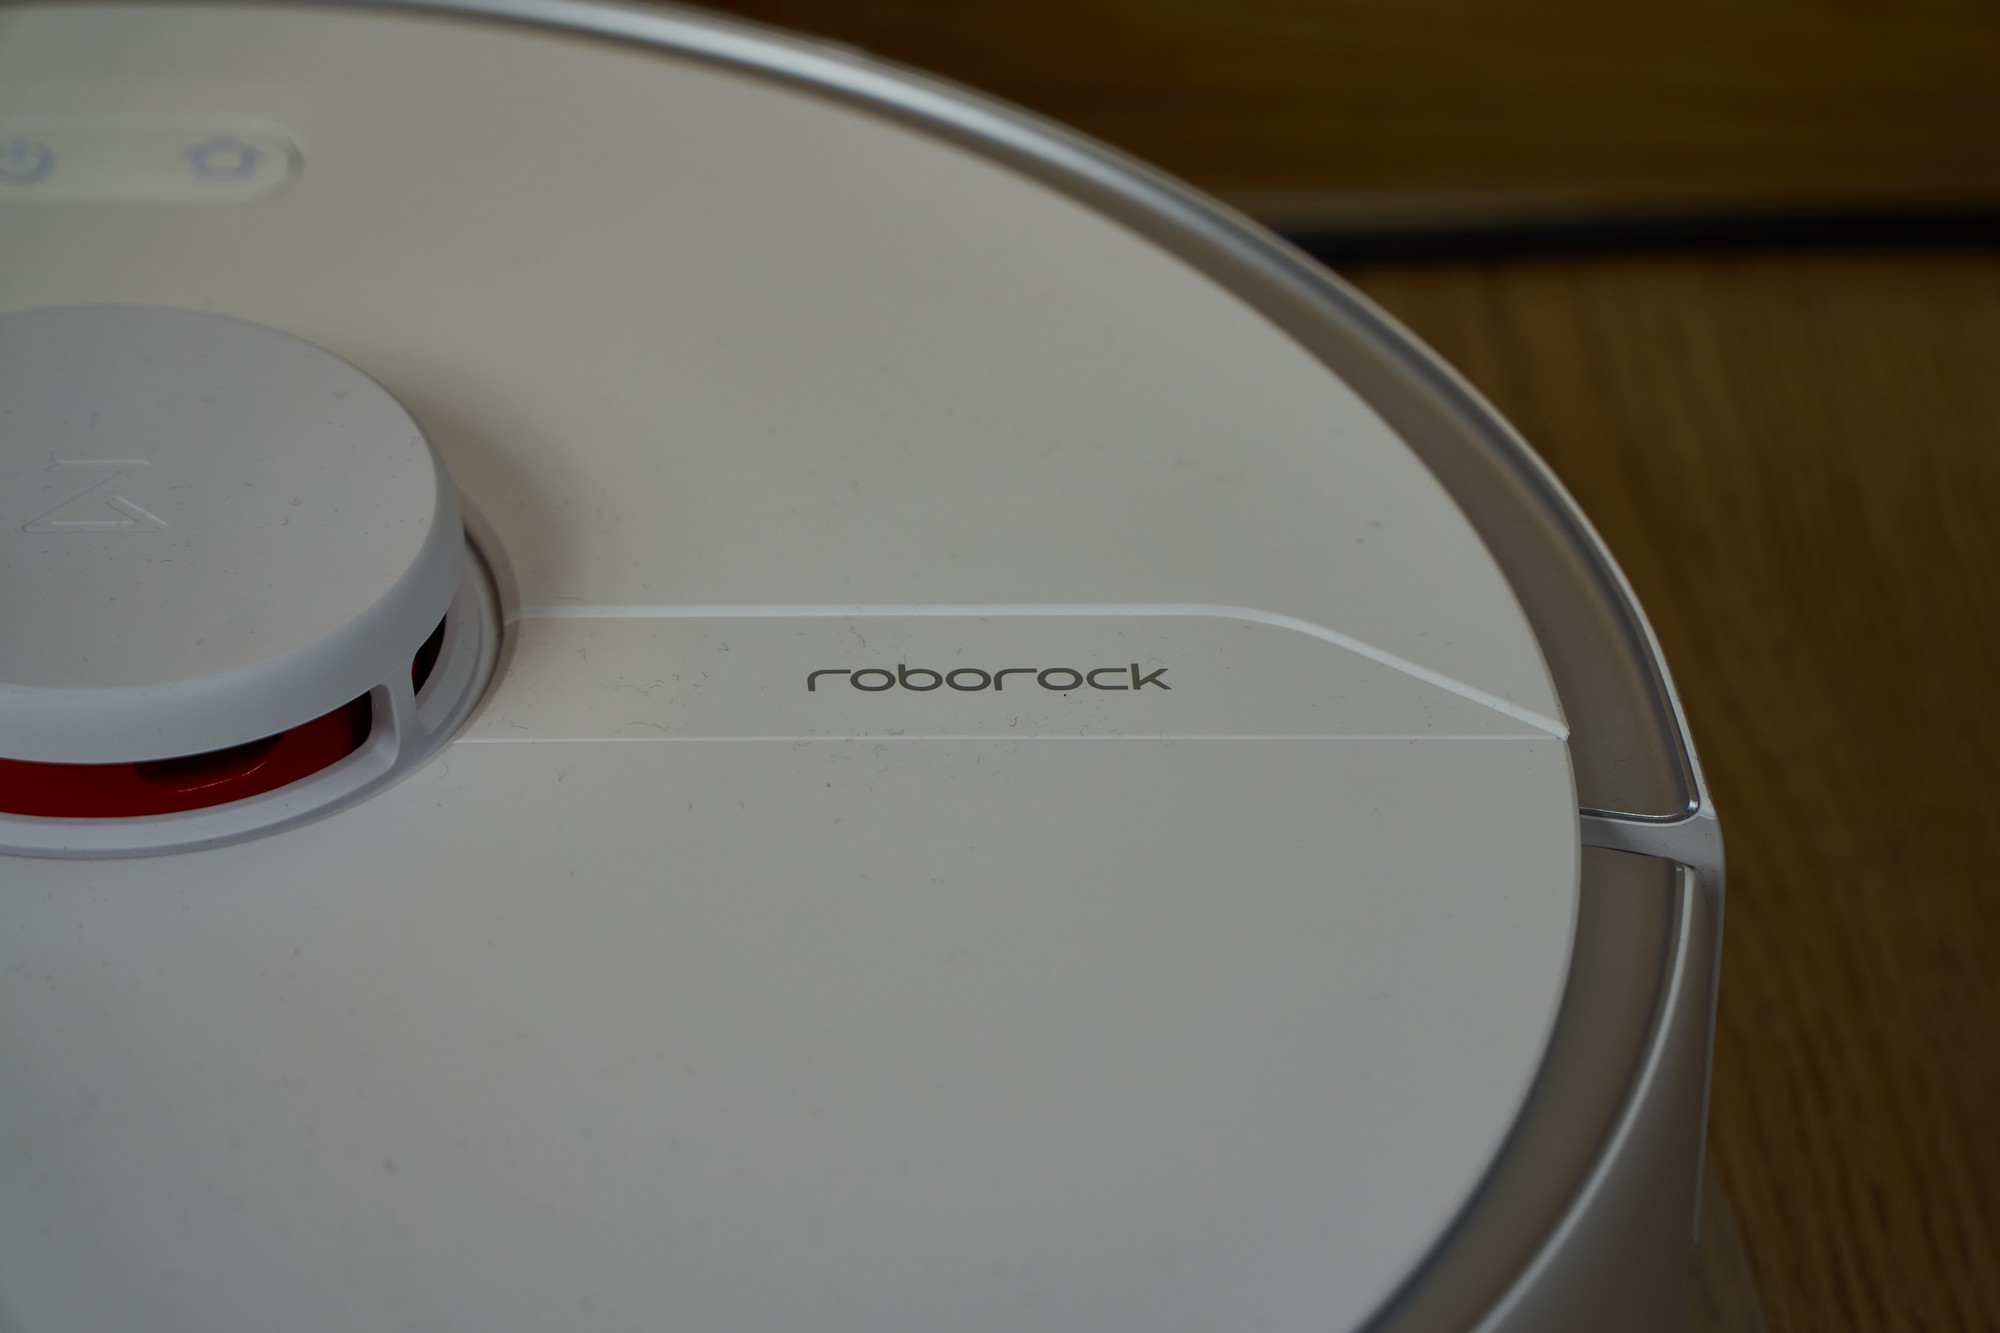 Recenzja Roborock S6 Pure - niezła propozycja dla niezdecydowanych